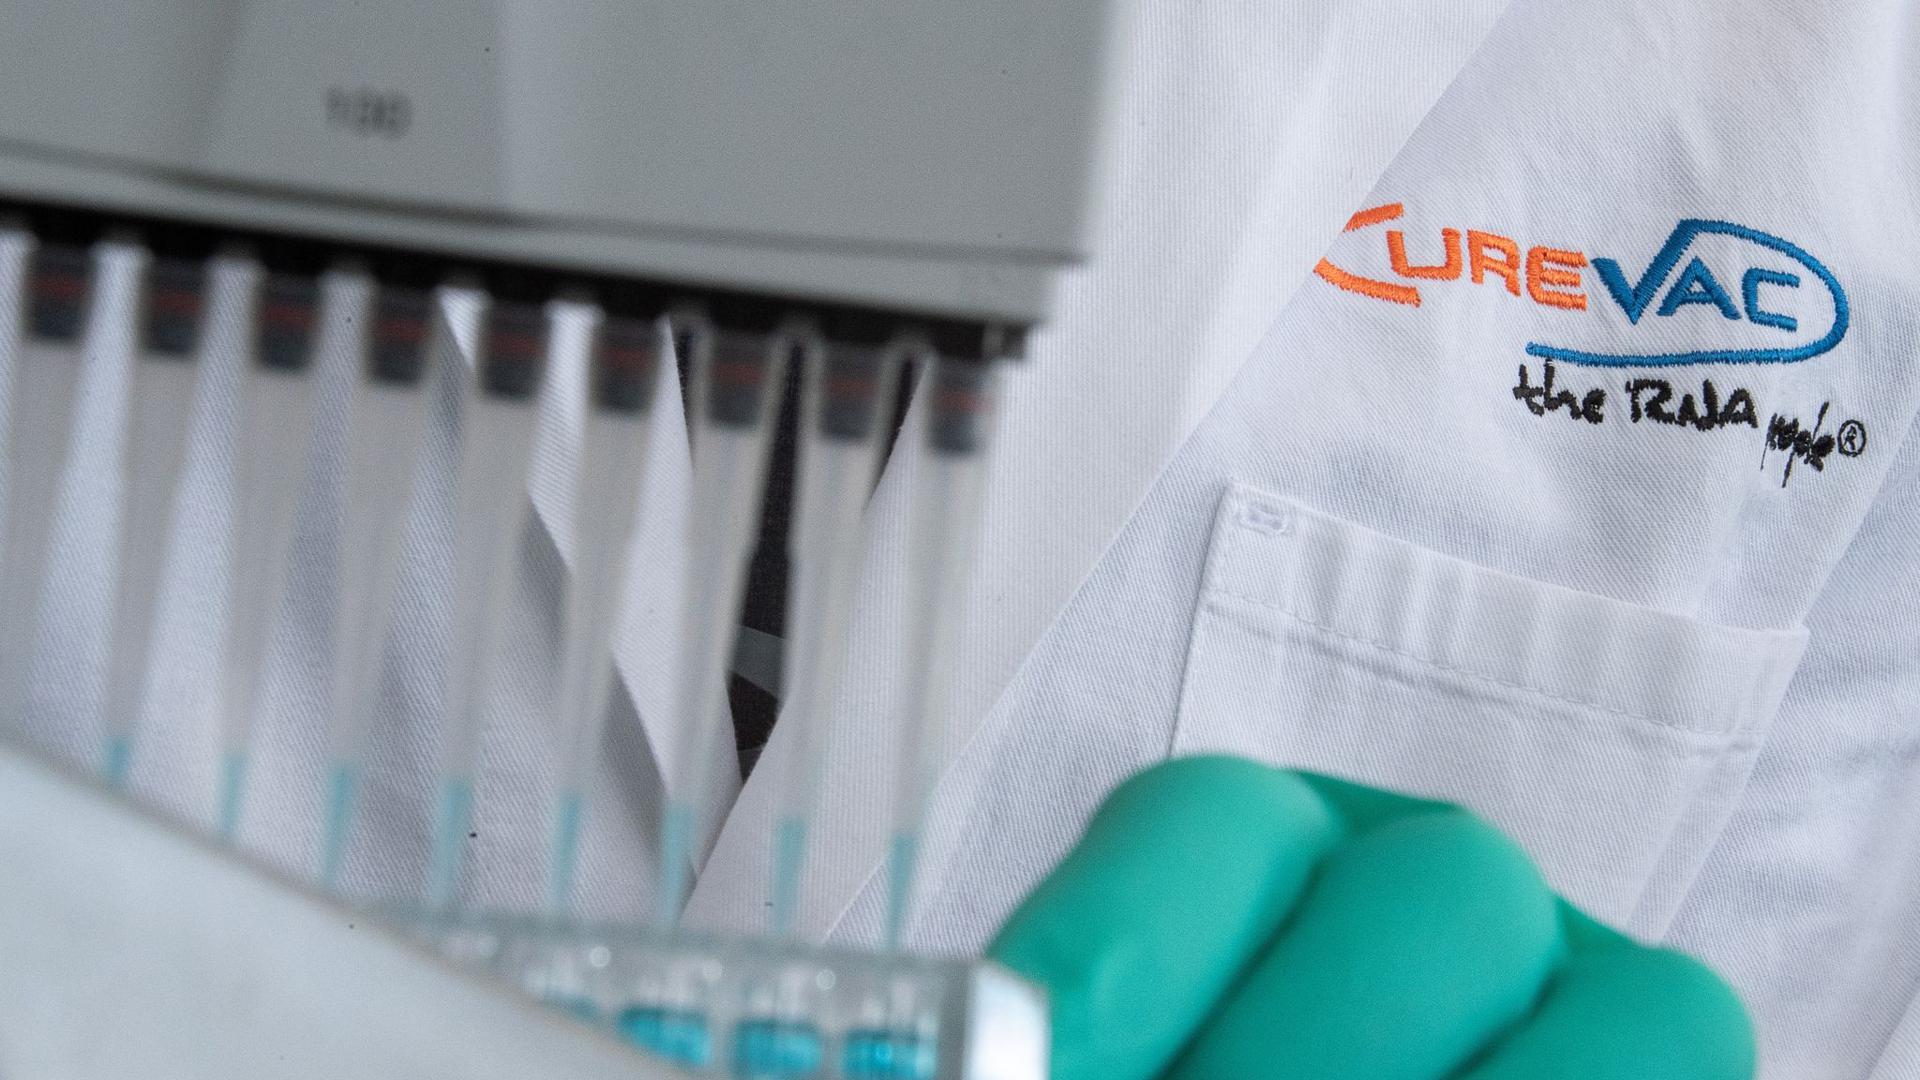 Das Biotech-Unternehmen Curevac geht an die Börse - das soll bis zu 245 Millionen US-Dollar einbringen.